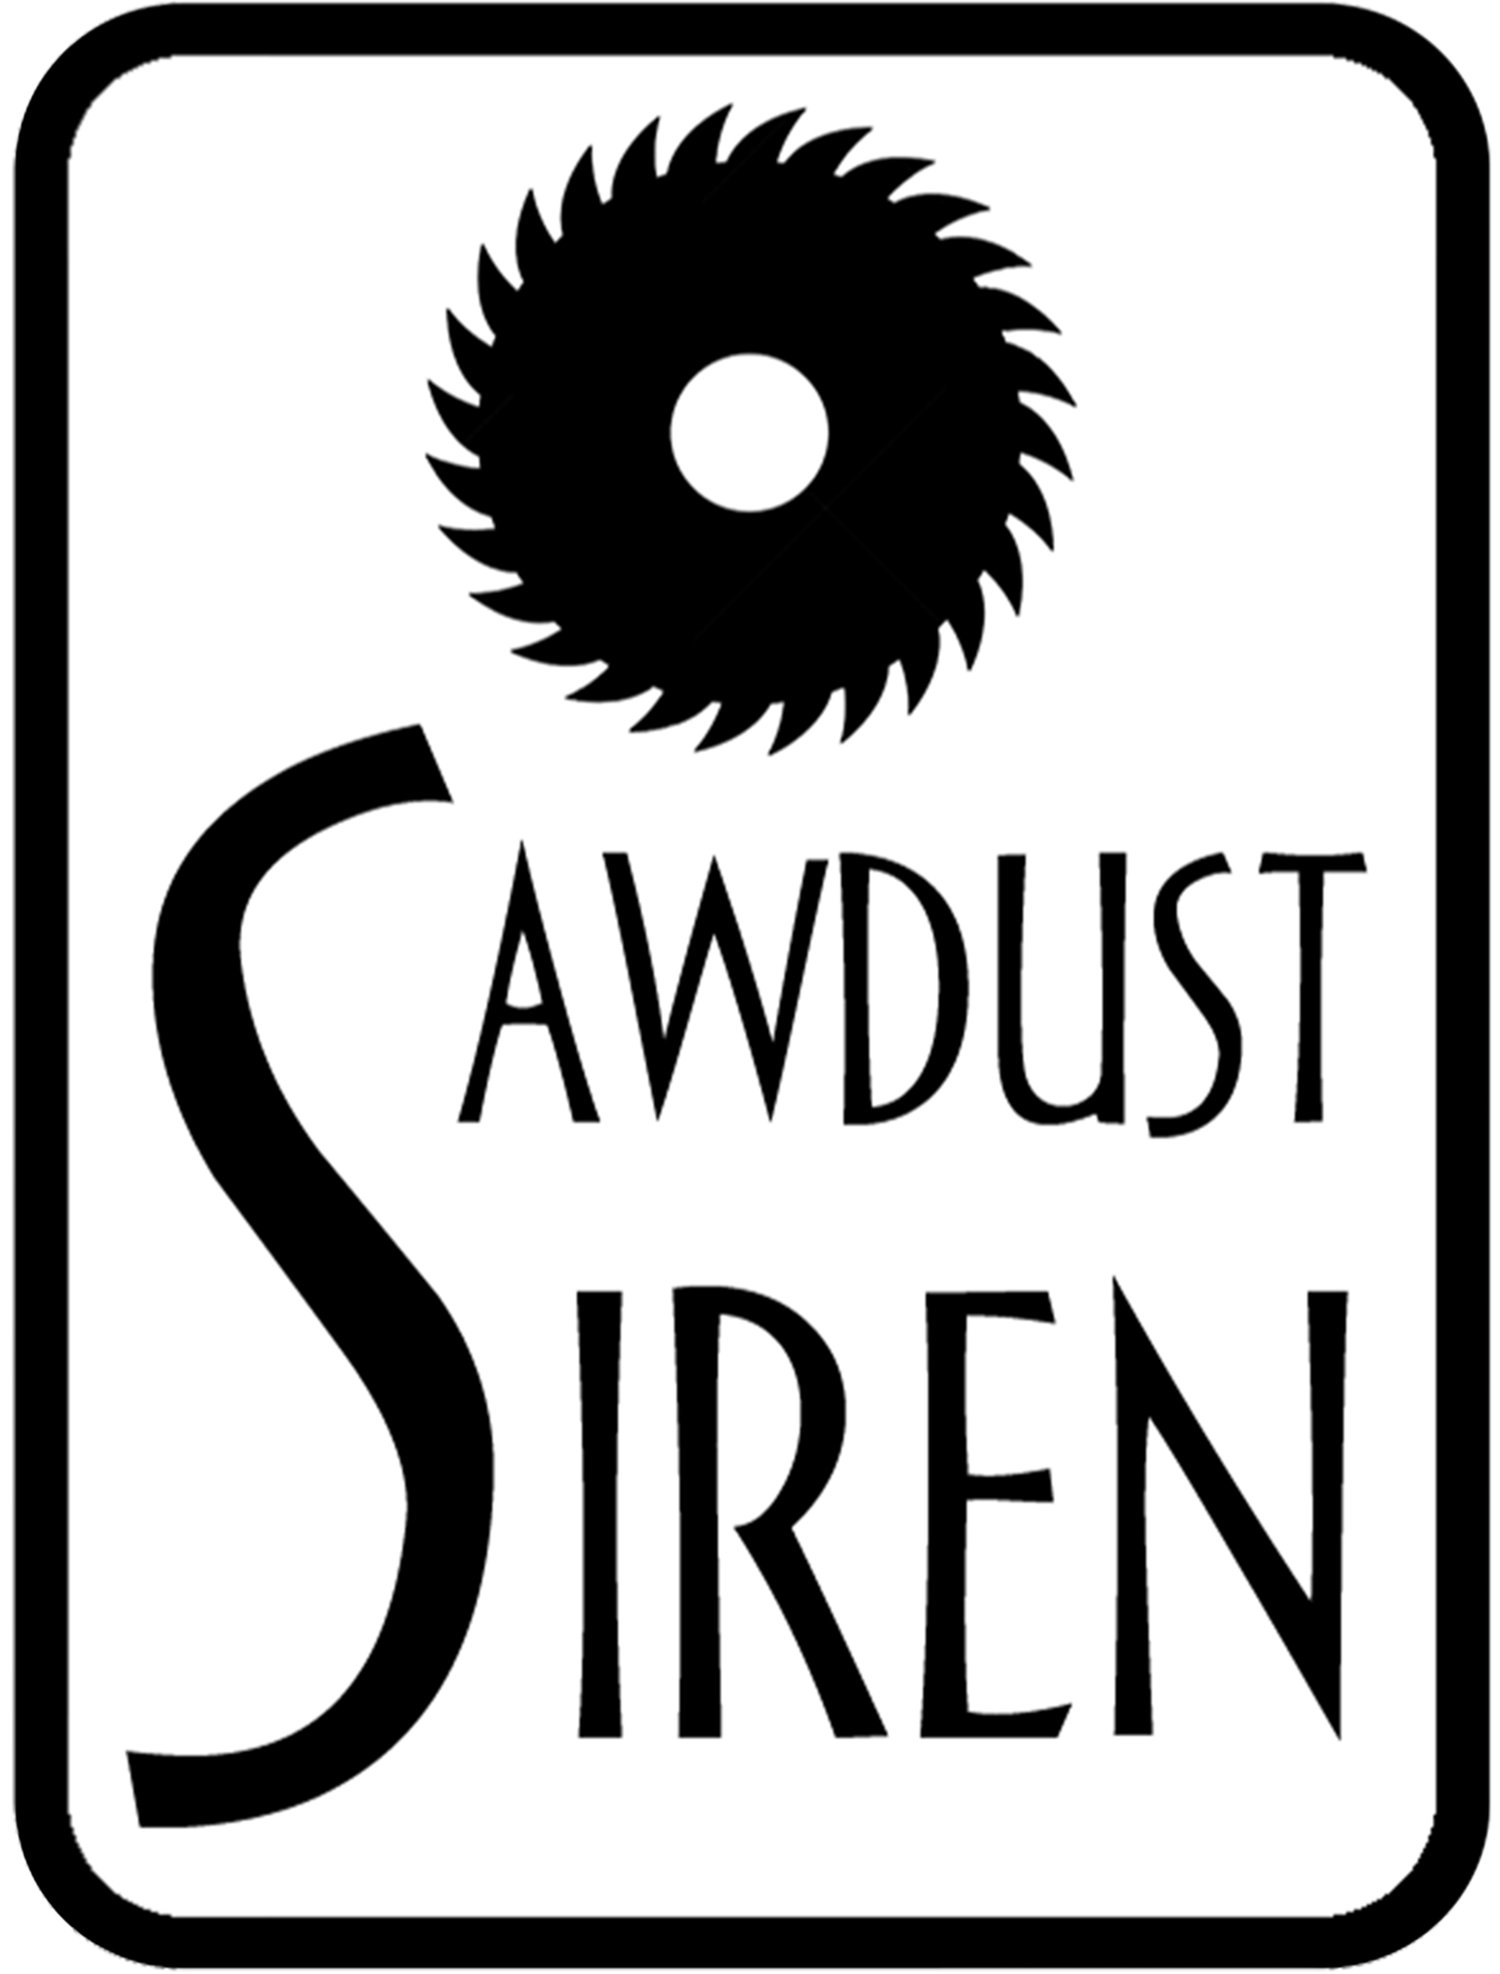 Sawdust Siren